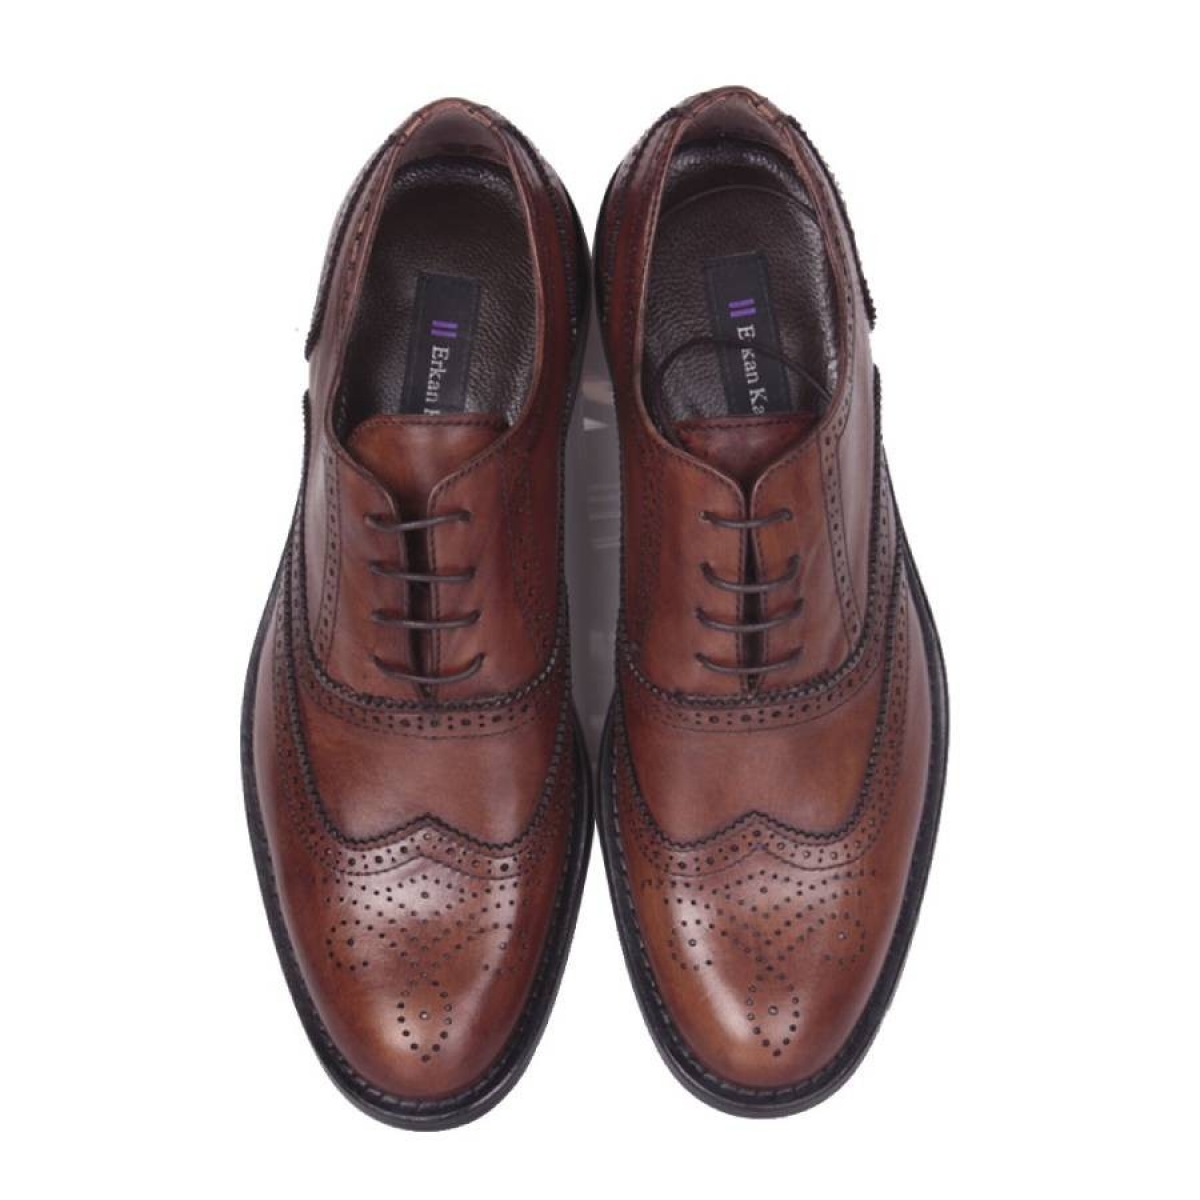 Flo - Erkan Kaban 327 167 Erkek Taba Deri Klasik Büyük & Küçük Numara Ayakkabı. 2